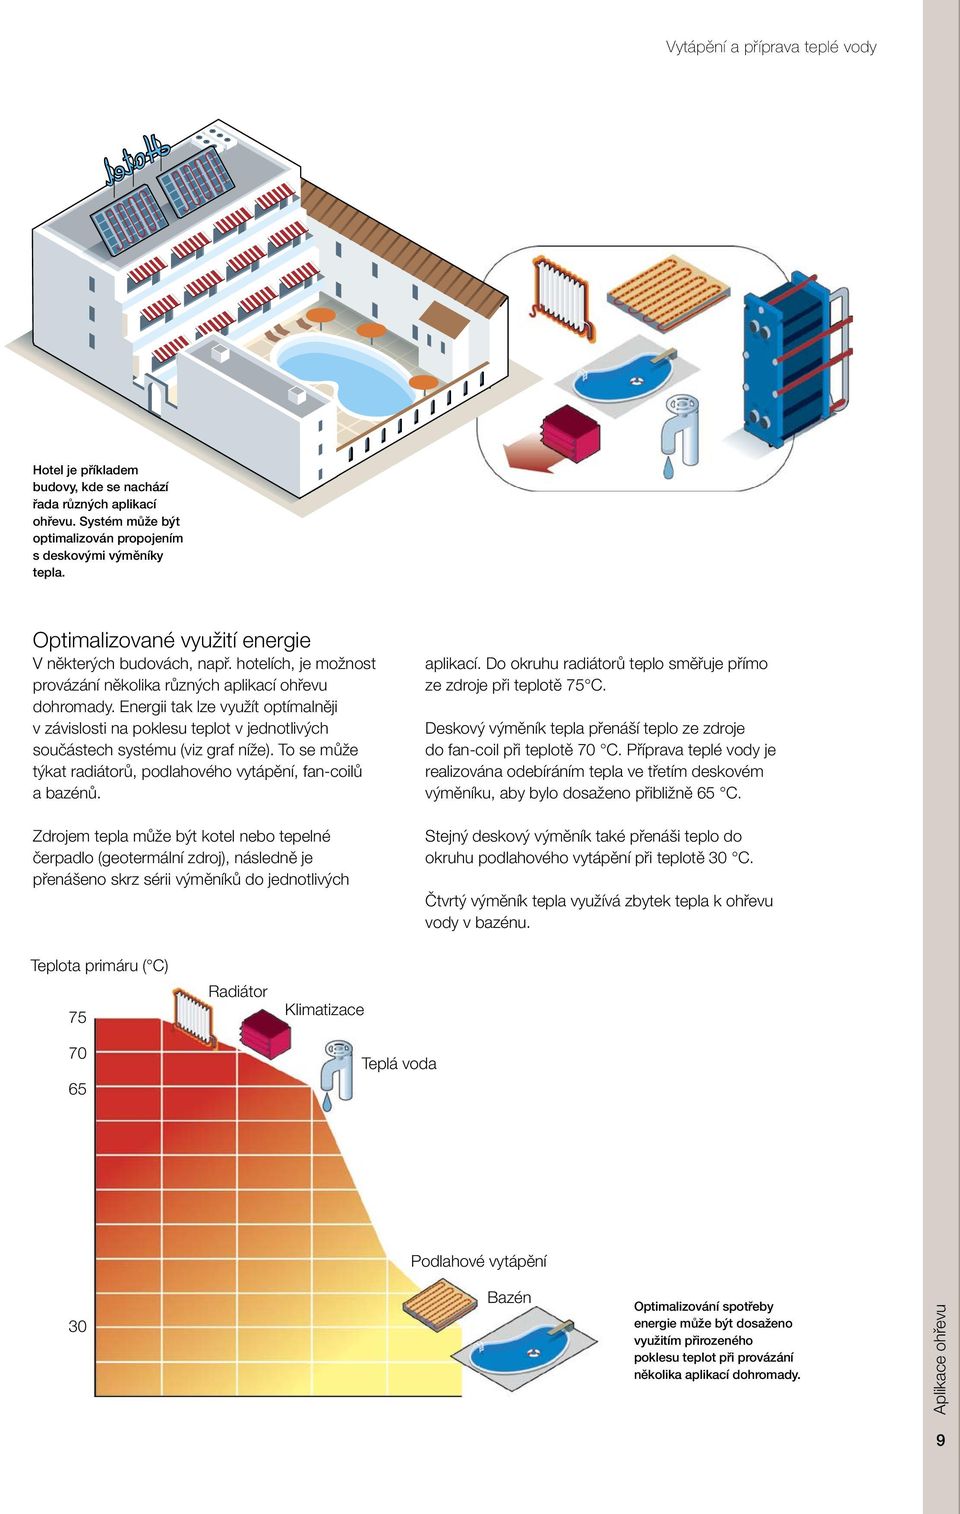 Energii tak lze využít optímalněji v závislosti na poklesu teplot v jednotlivých součástech systému (viz graf níže). To se může týkat radiátorů, podlahového vytápění, fan-coilů a bazénů.